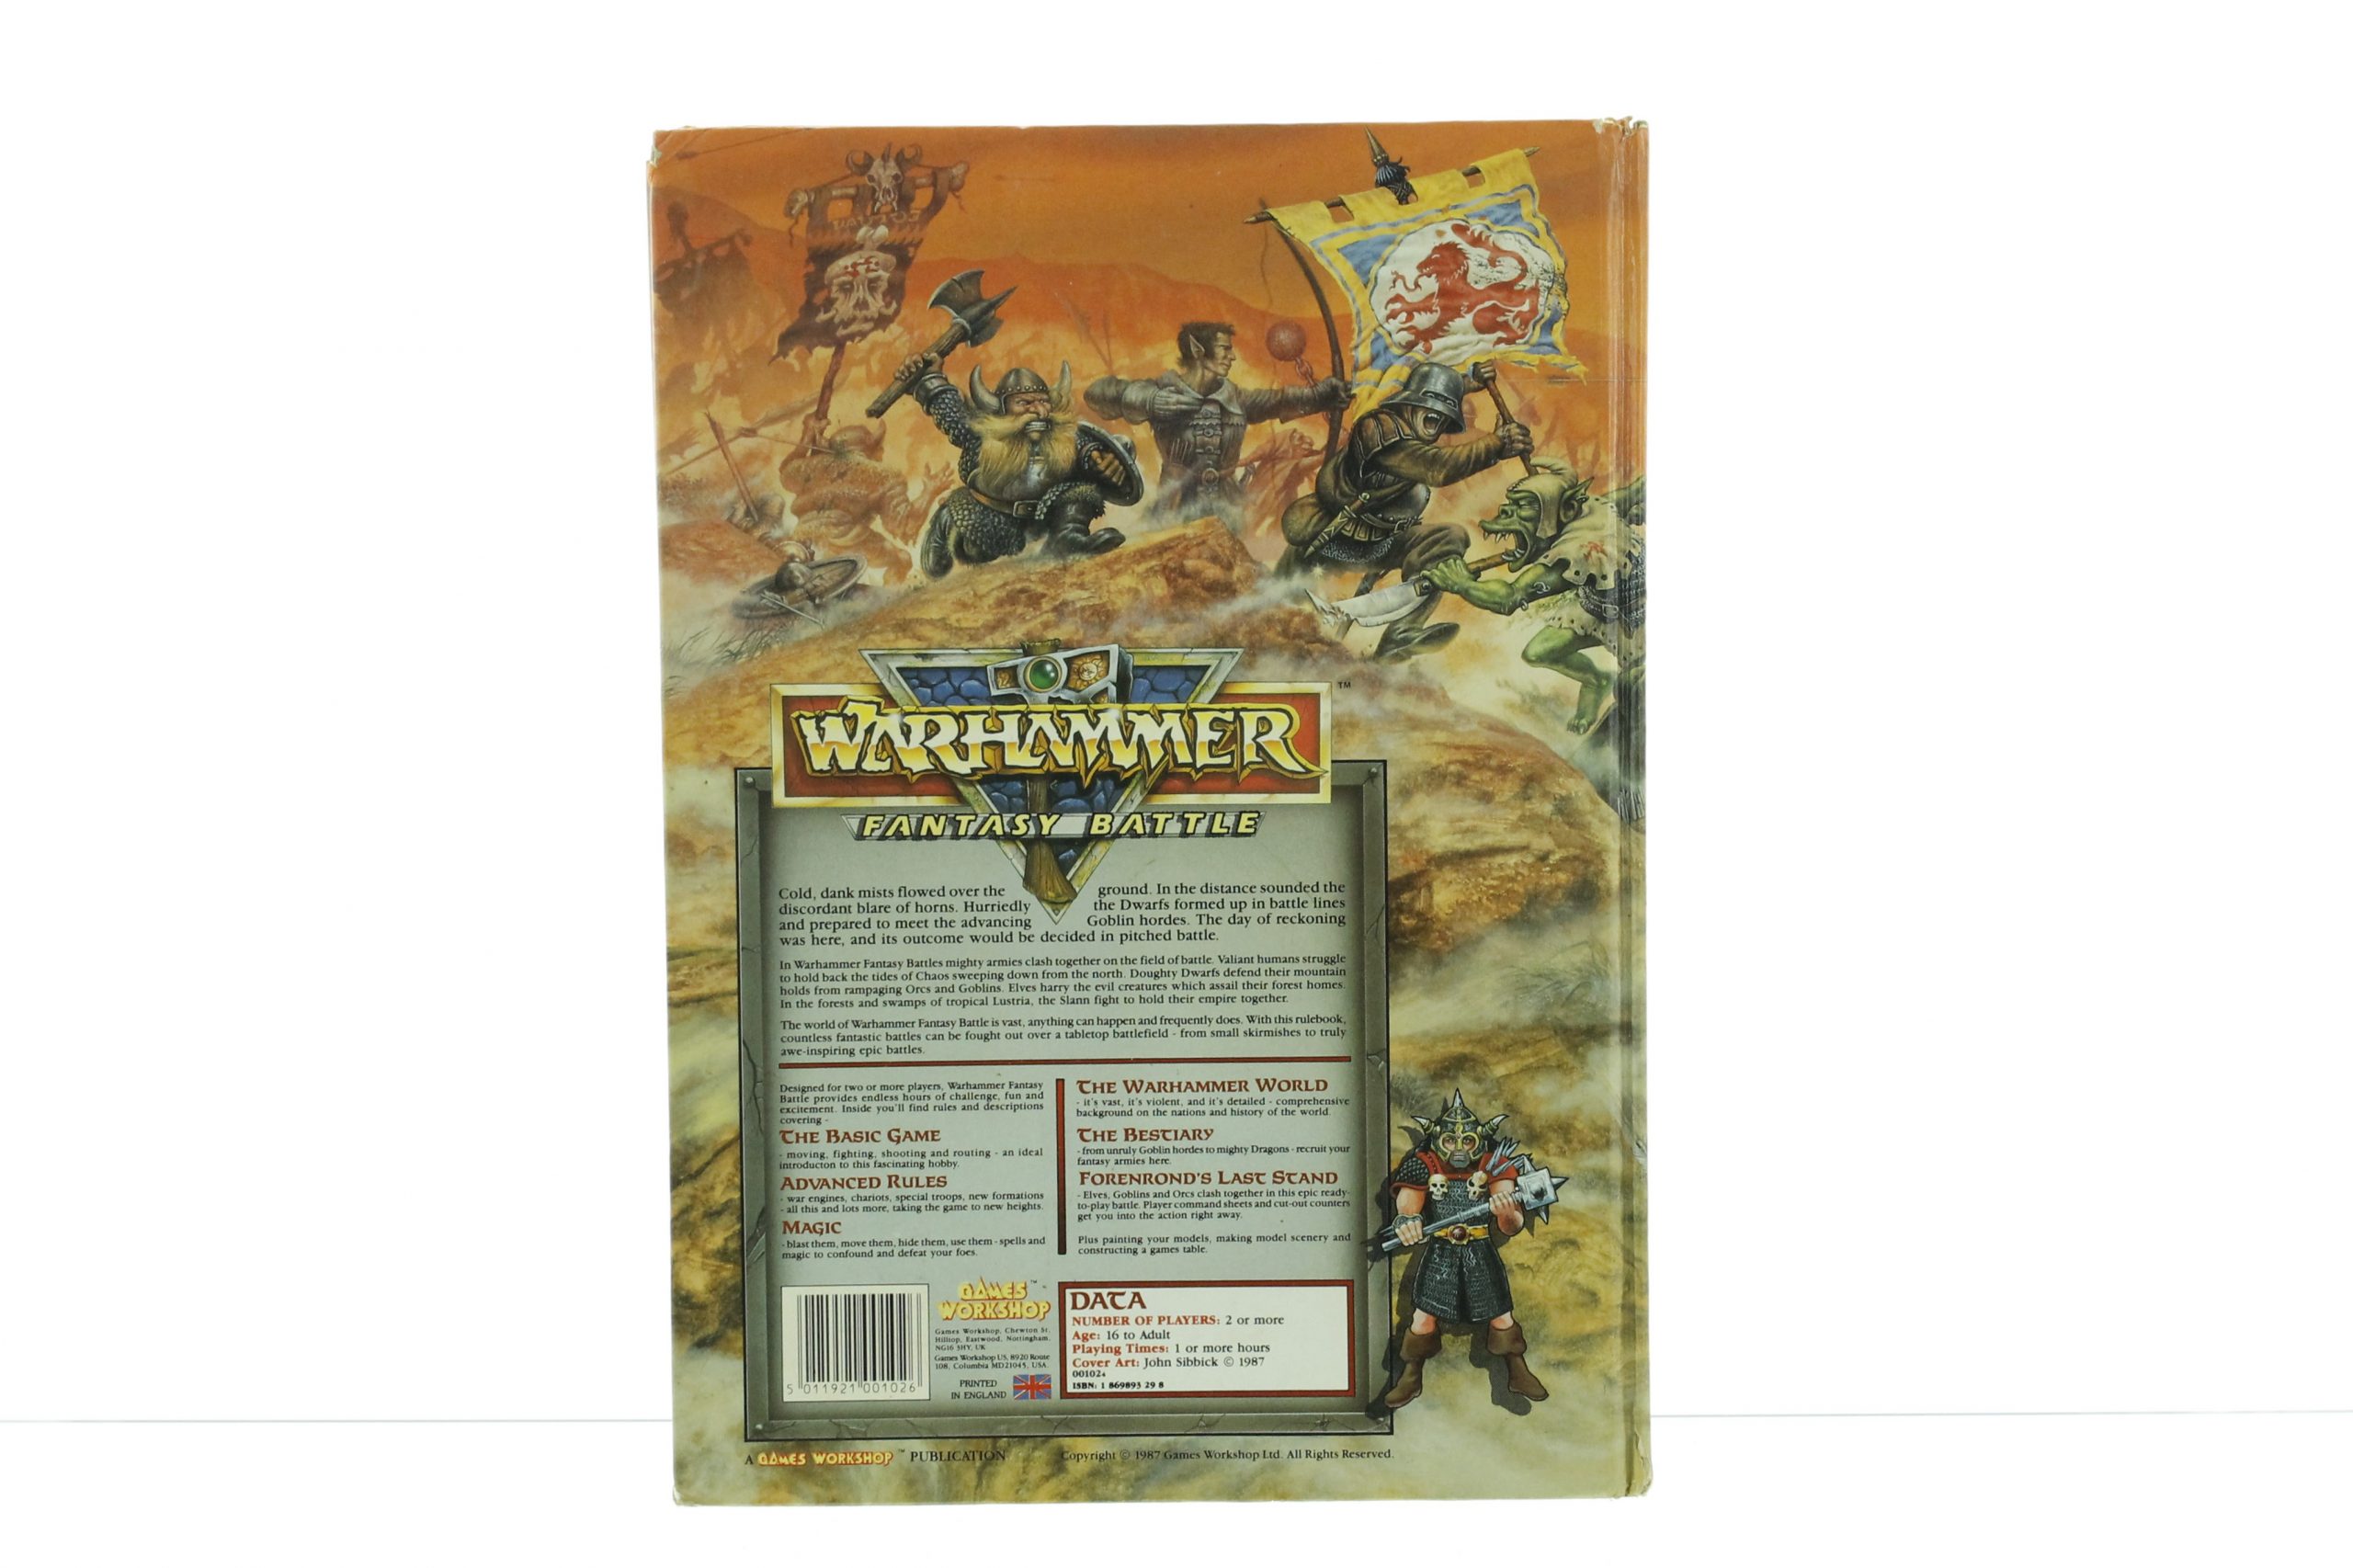 warhammer fantasy battle 3rd edition